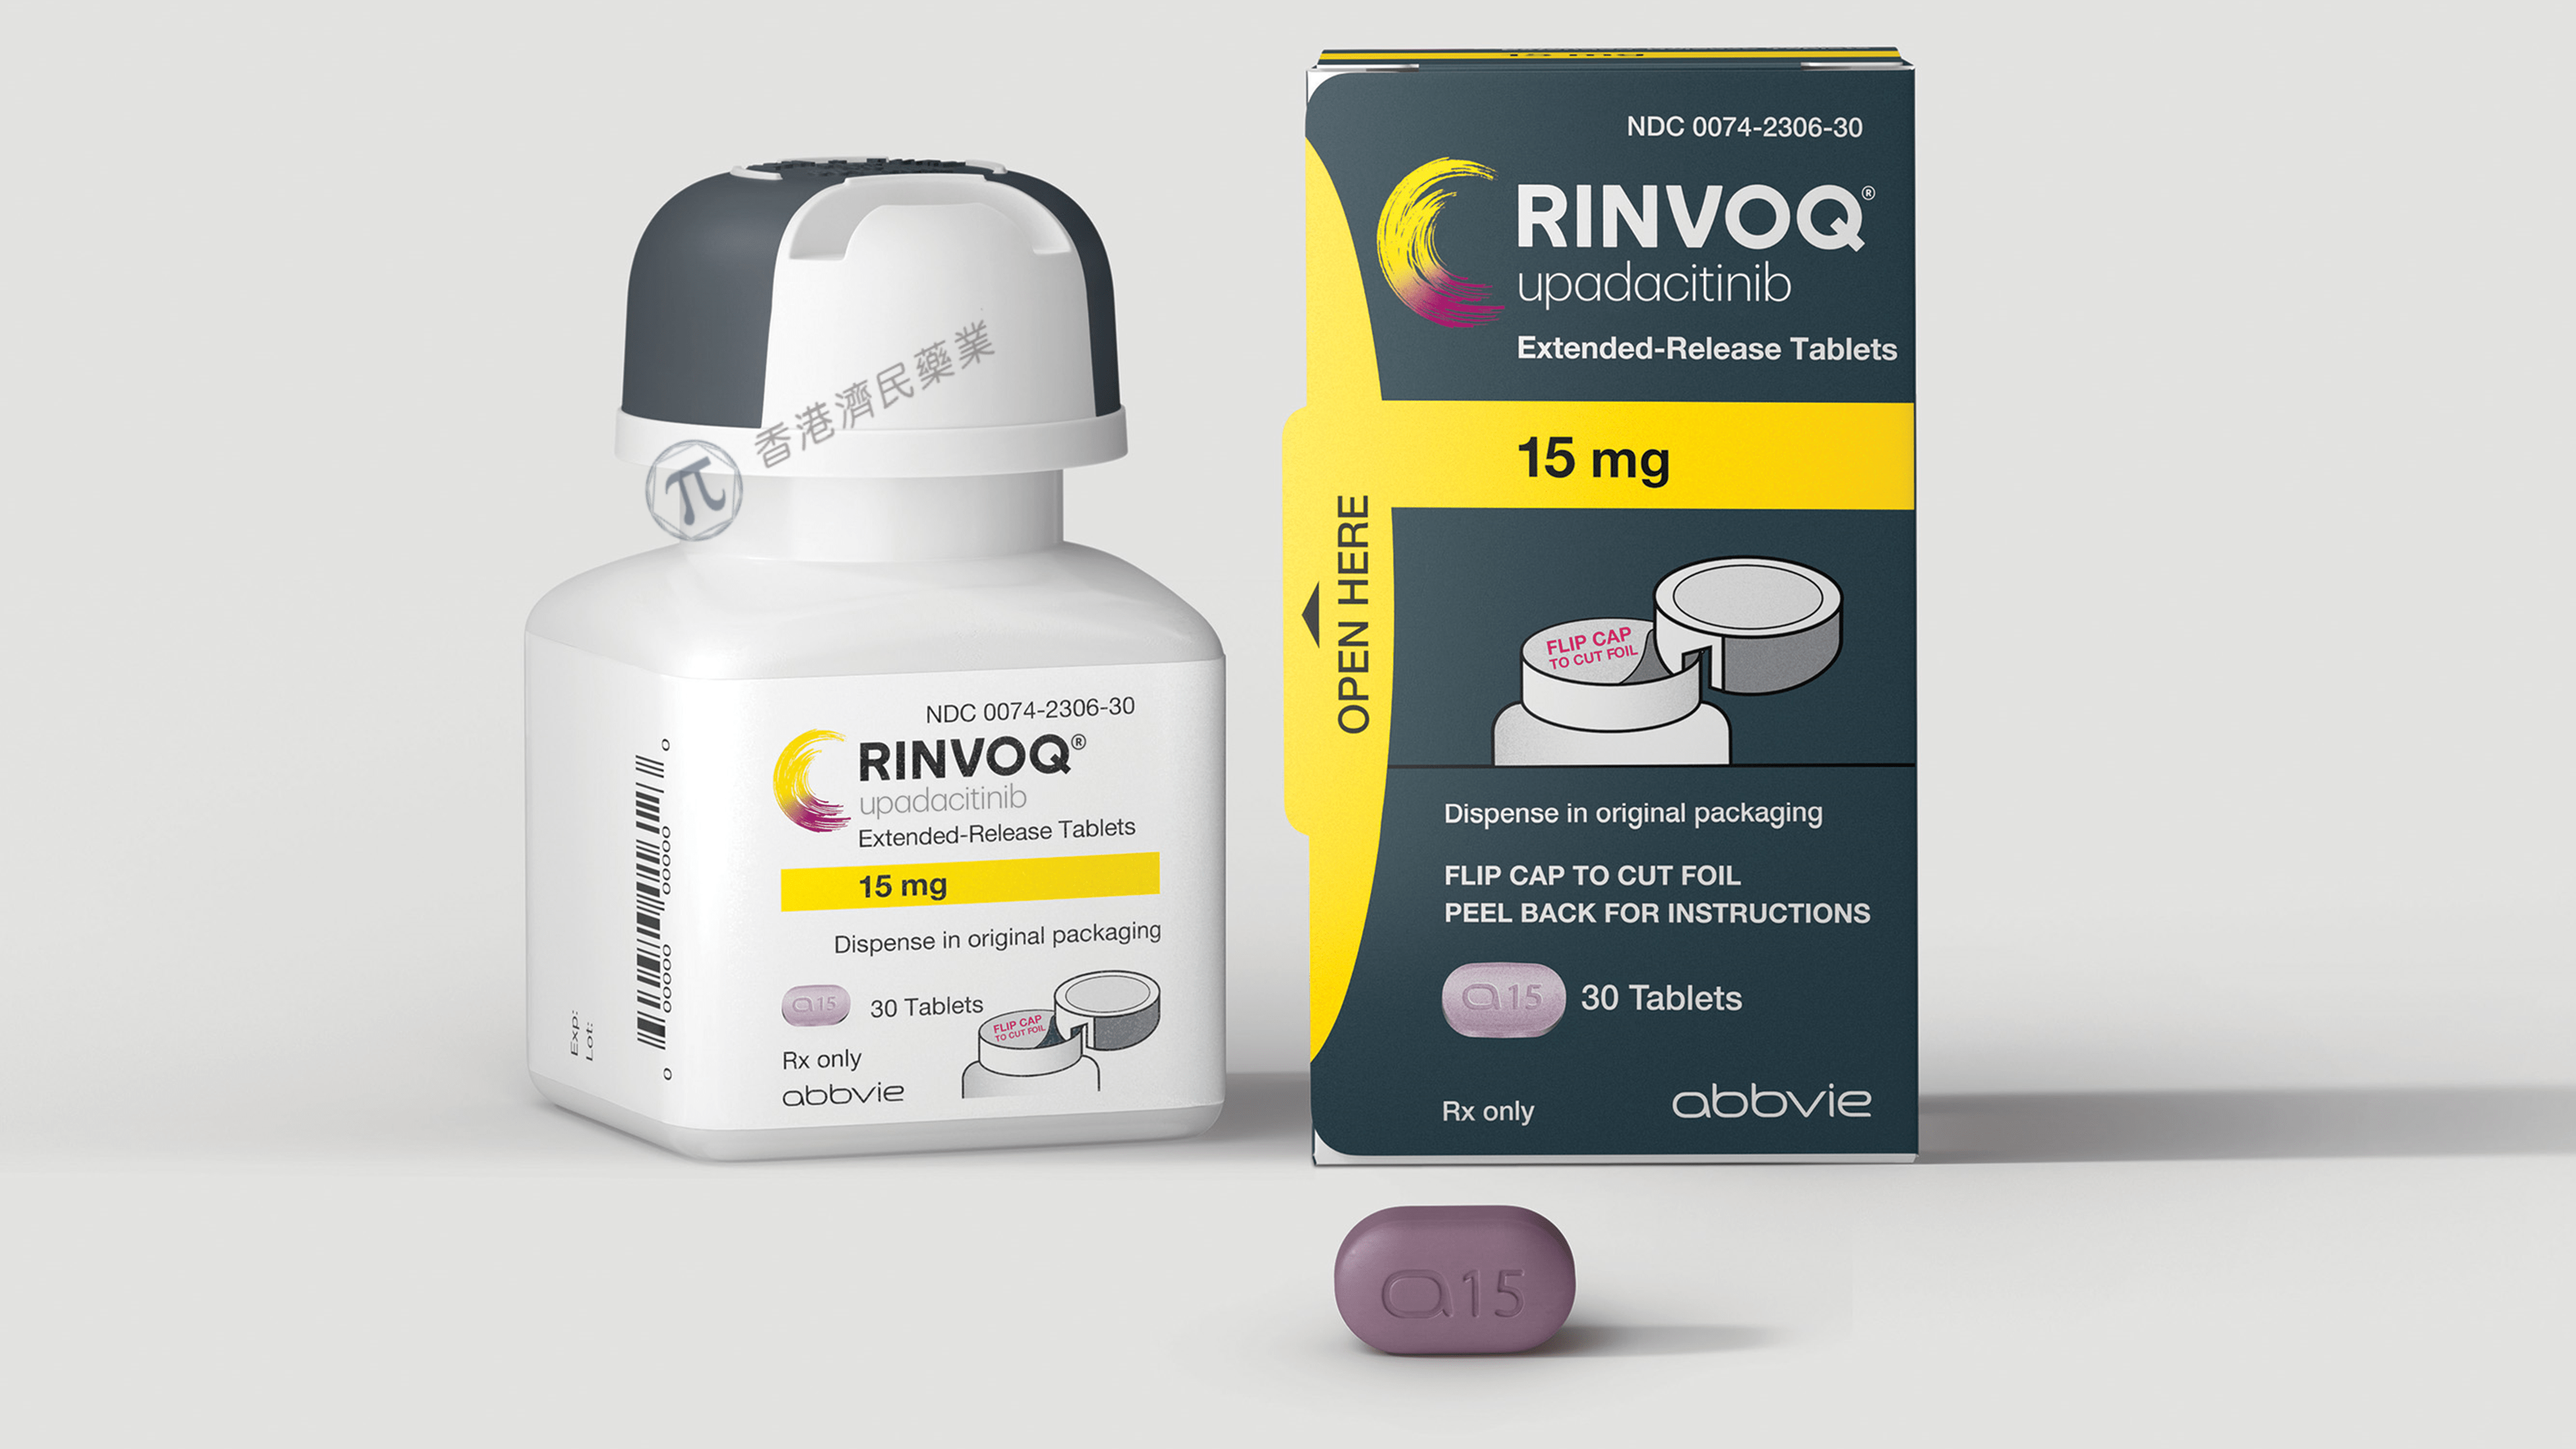 口服JAK1抑制剂Rinvoq在欧盟获批用于治疗中重度活动性克罗恩病